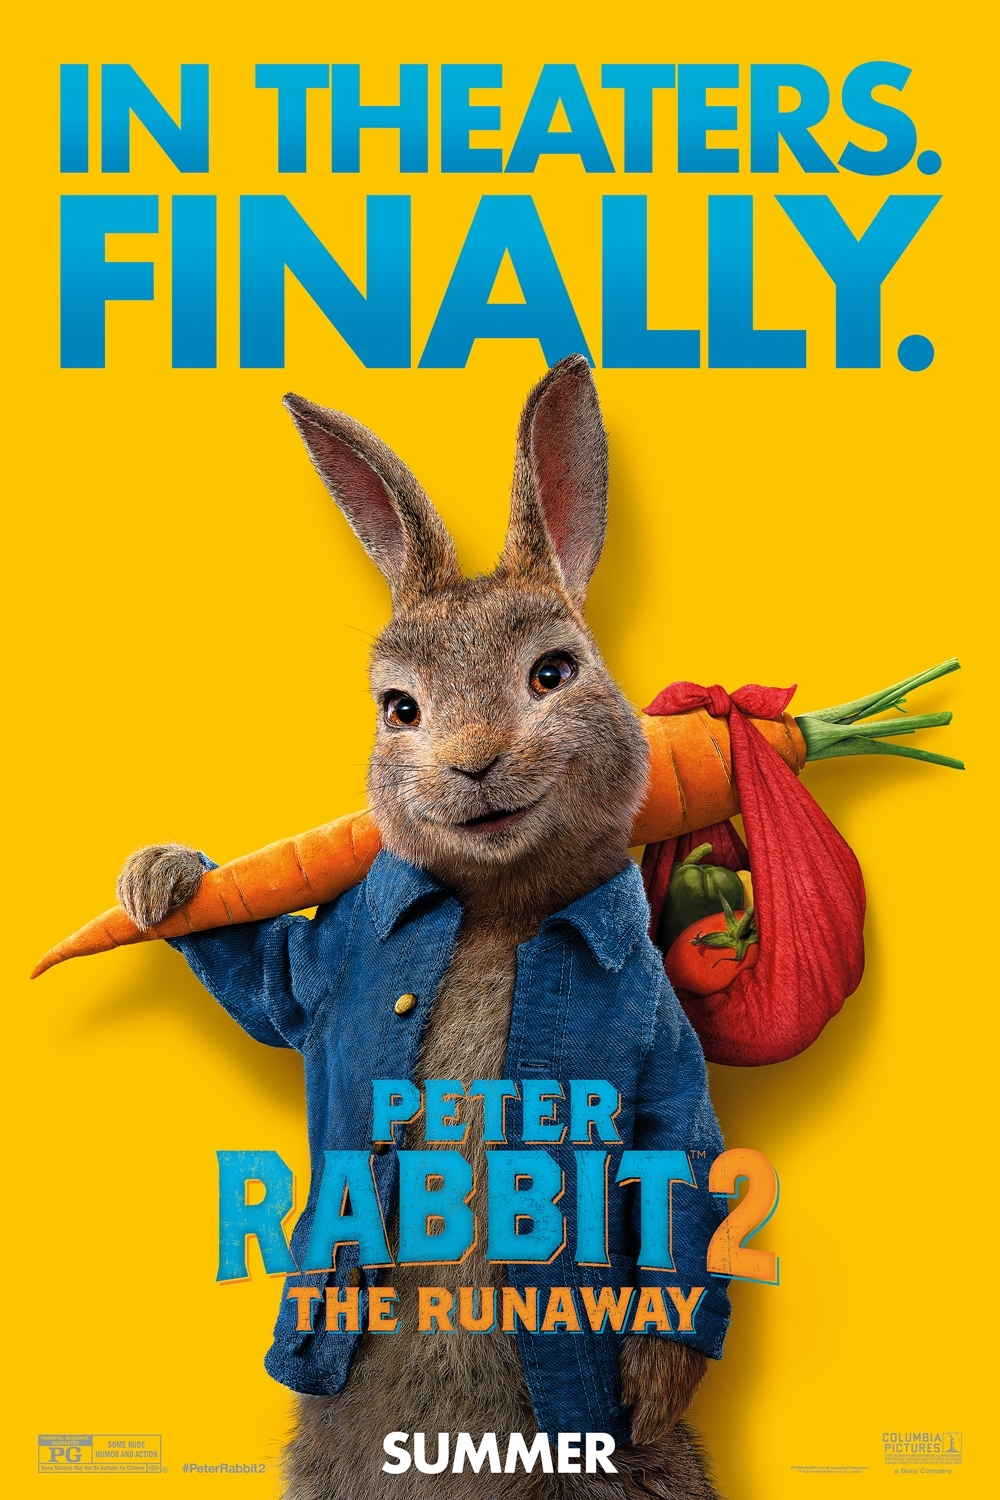 Still of Peter Rabbit 2: The Runaway